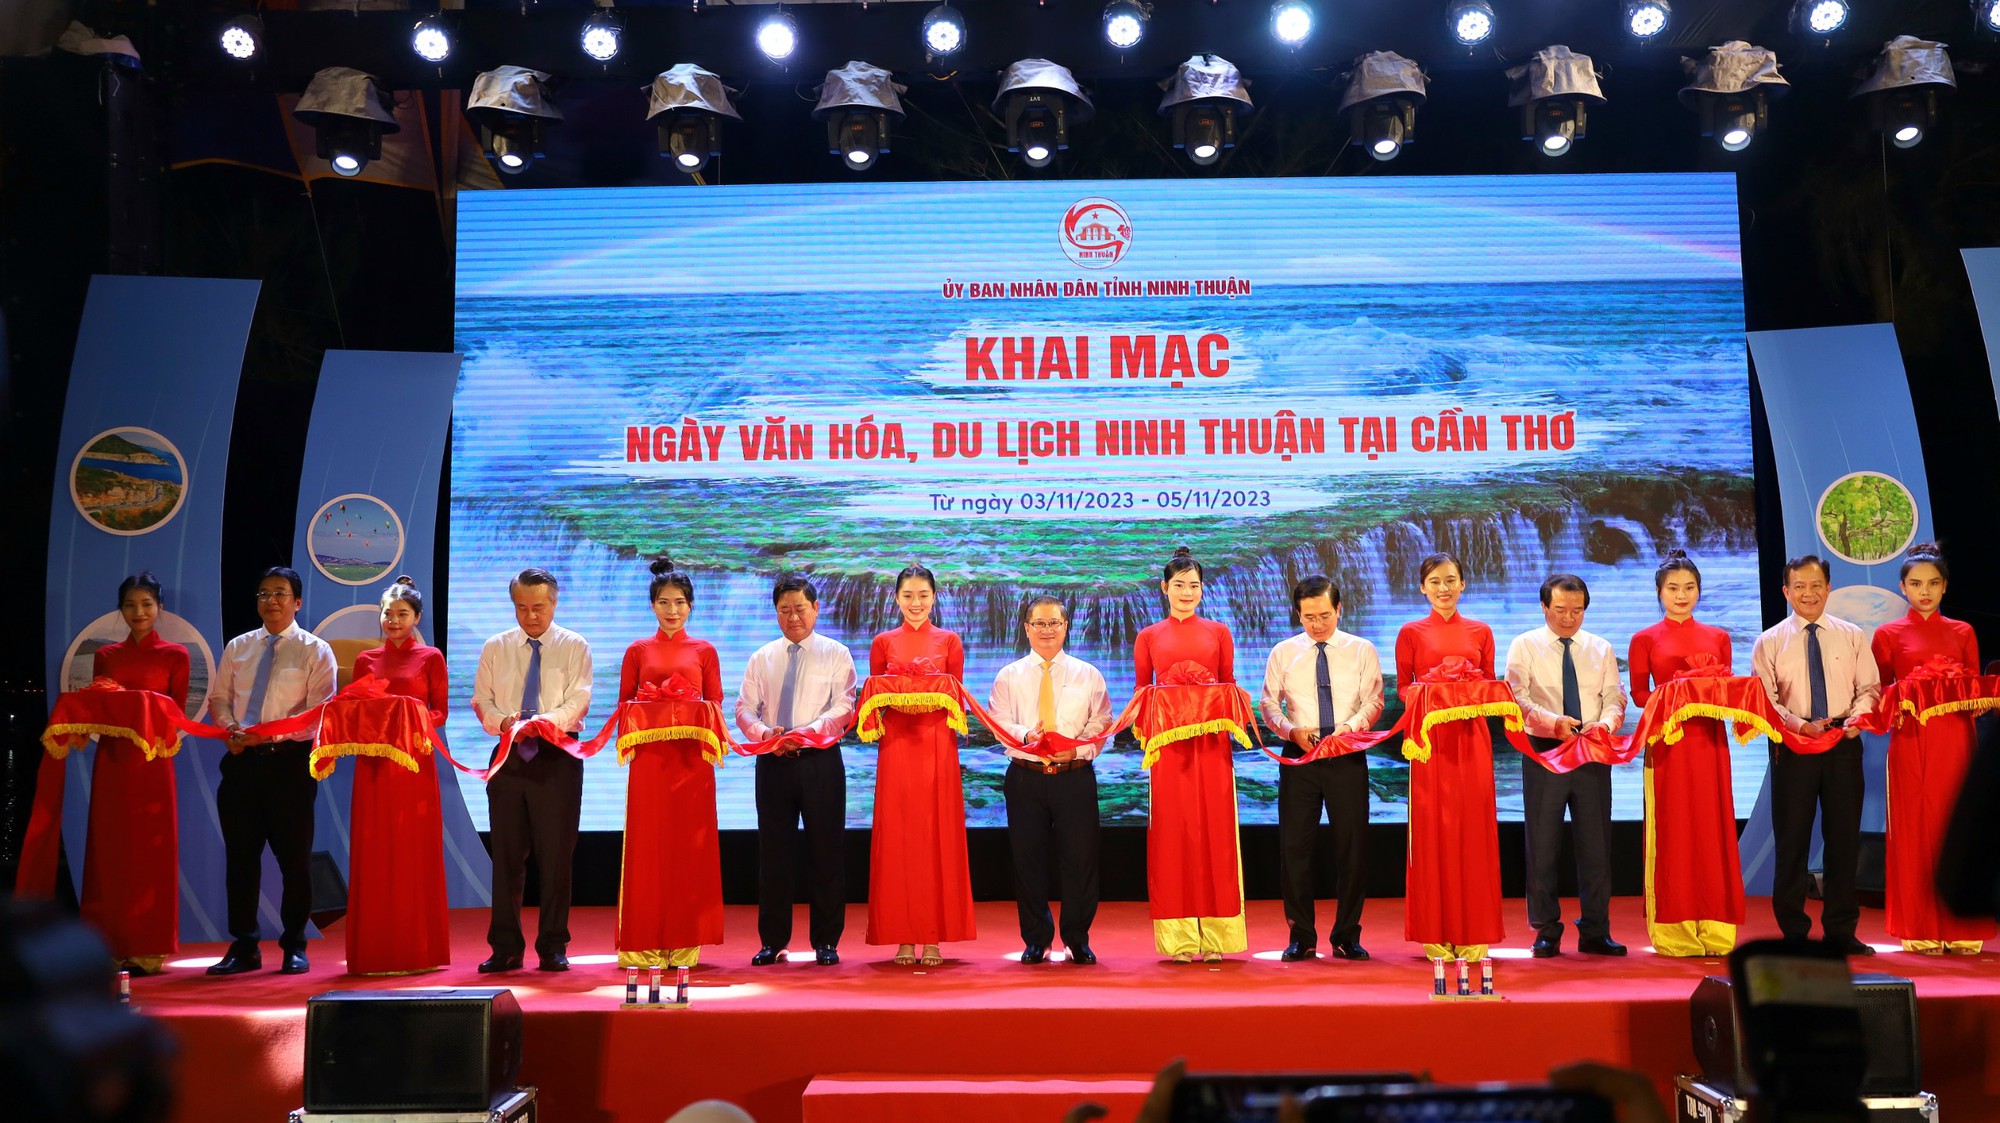 Ninh Thuận giới thiệu, quảng bá và tôn vinh văn hóa, du lịch tại Cần Thơ - Ảnh 1.